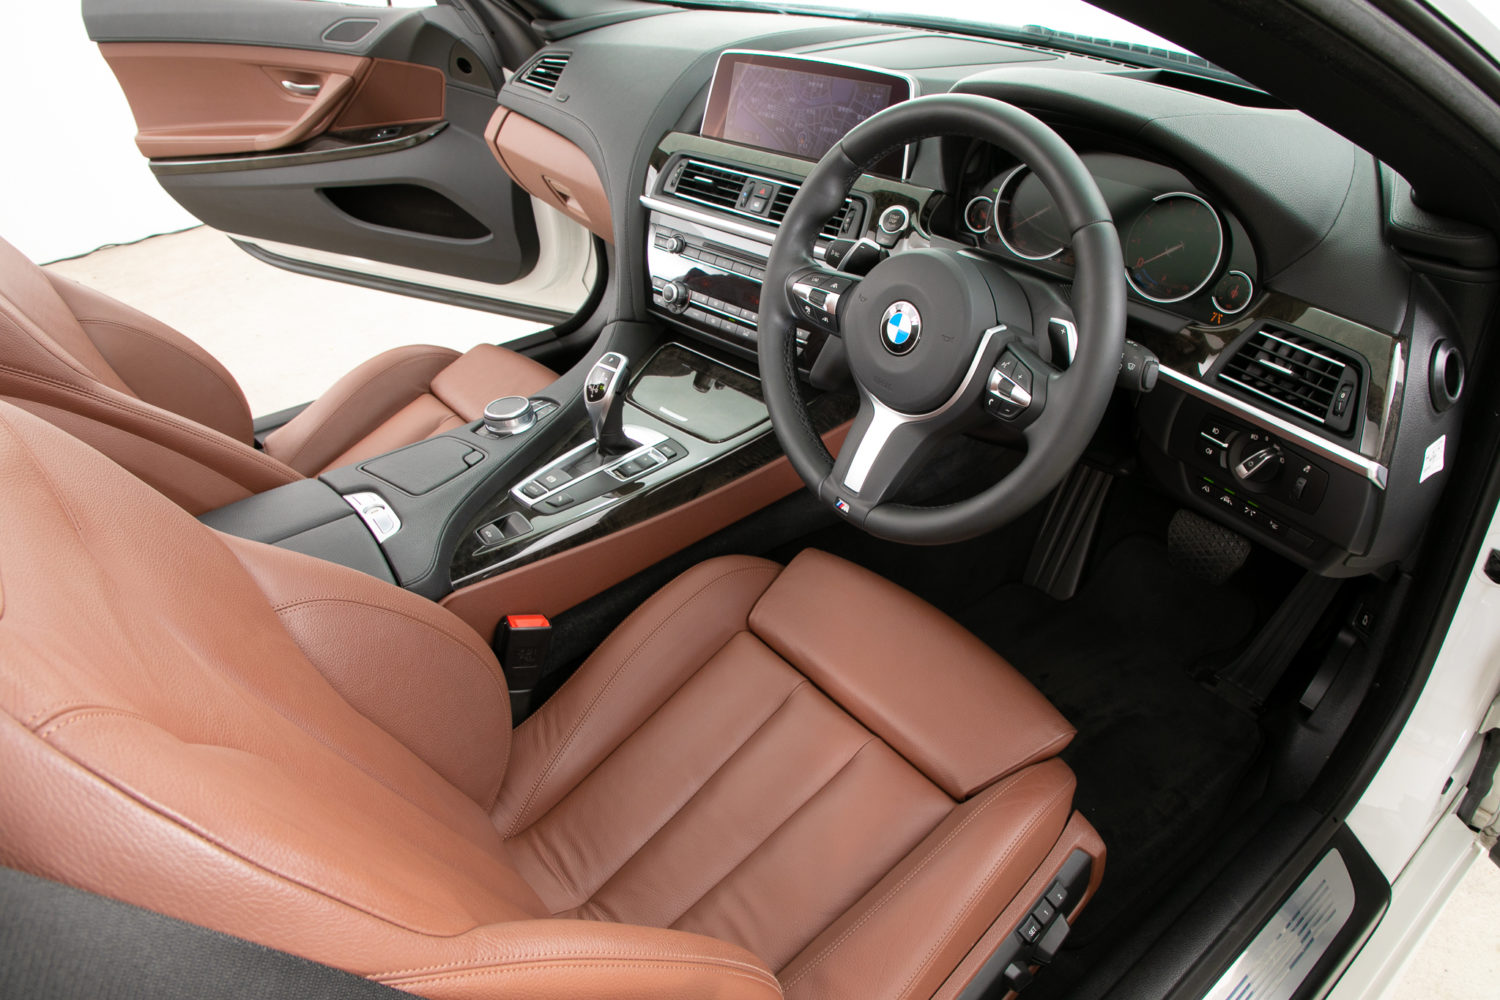 BMW RHD 車用フロアマット GT 5人乗り 2017 2016 2015 2014 カーペットラグ フットライナー 自動車パーツ アクセサリー インテリア - 14